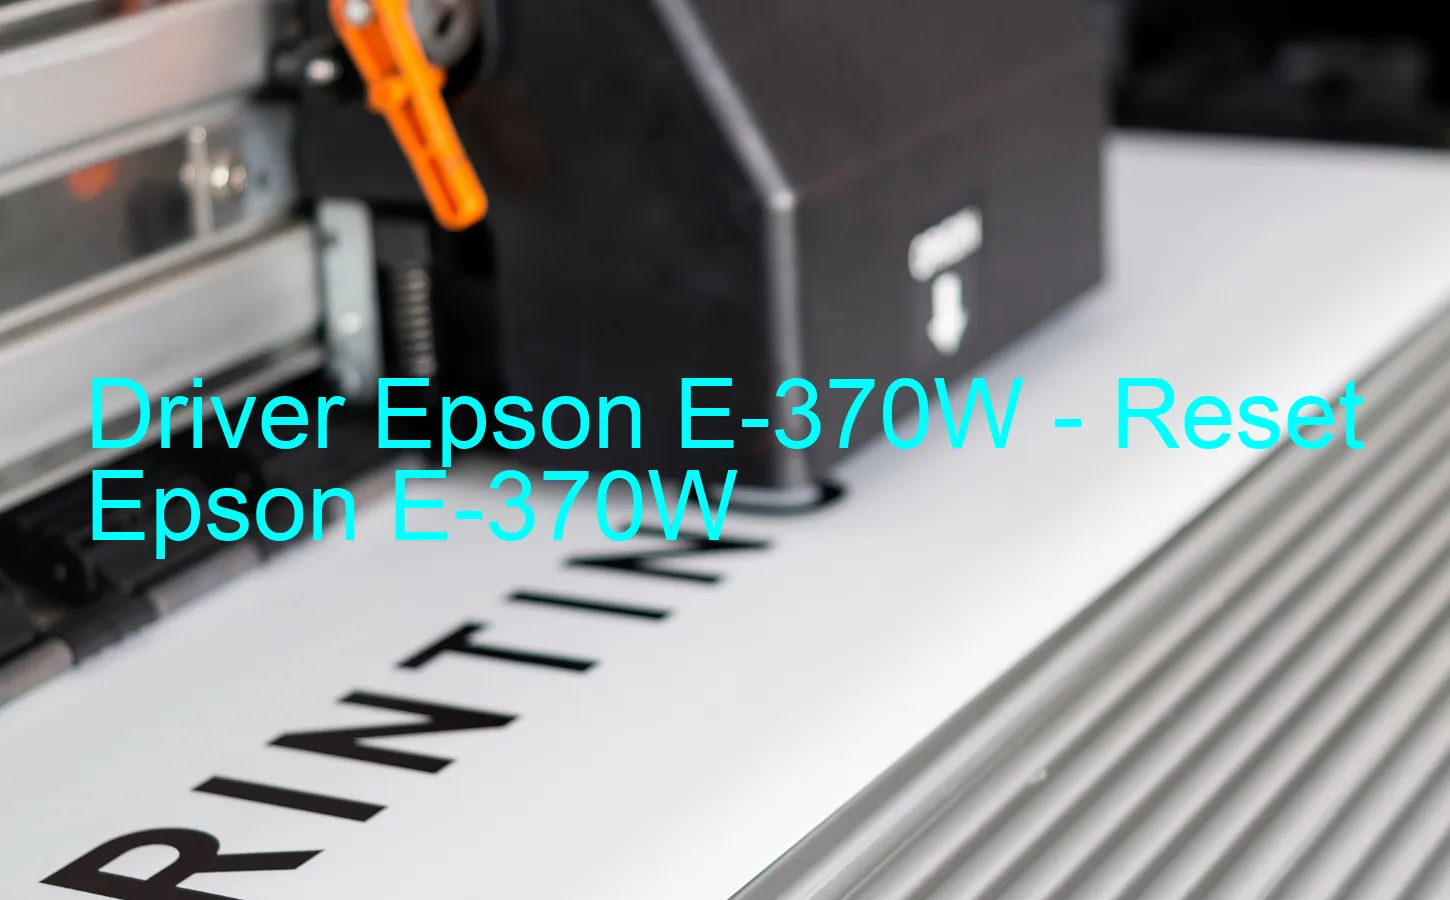 Epson E-370Wのドライバー、Epson E-370Wのリセットソフトウェア